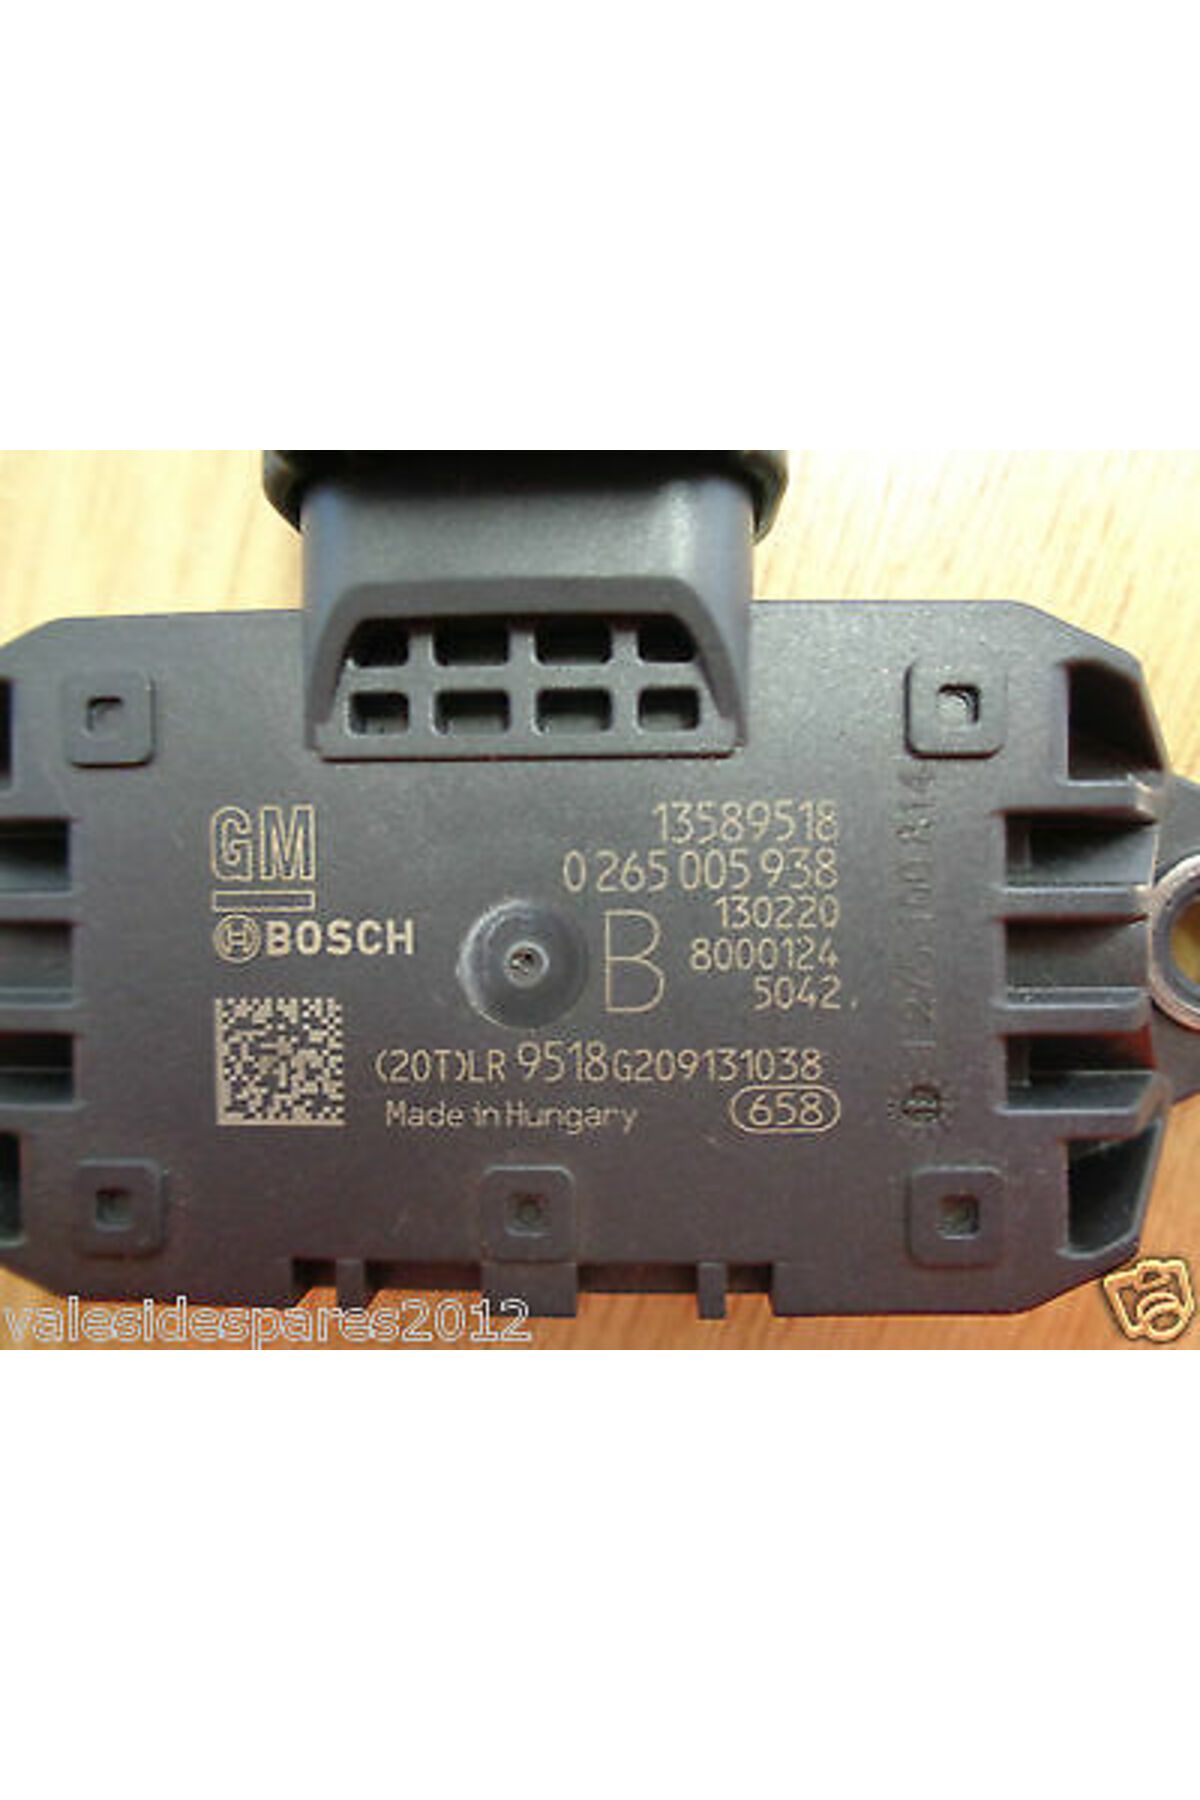 Bosch 0265005938 Esp Sensörü Opel, Chevrolet, Corvette, Caprice, Impala